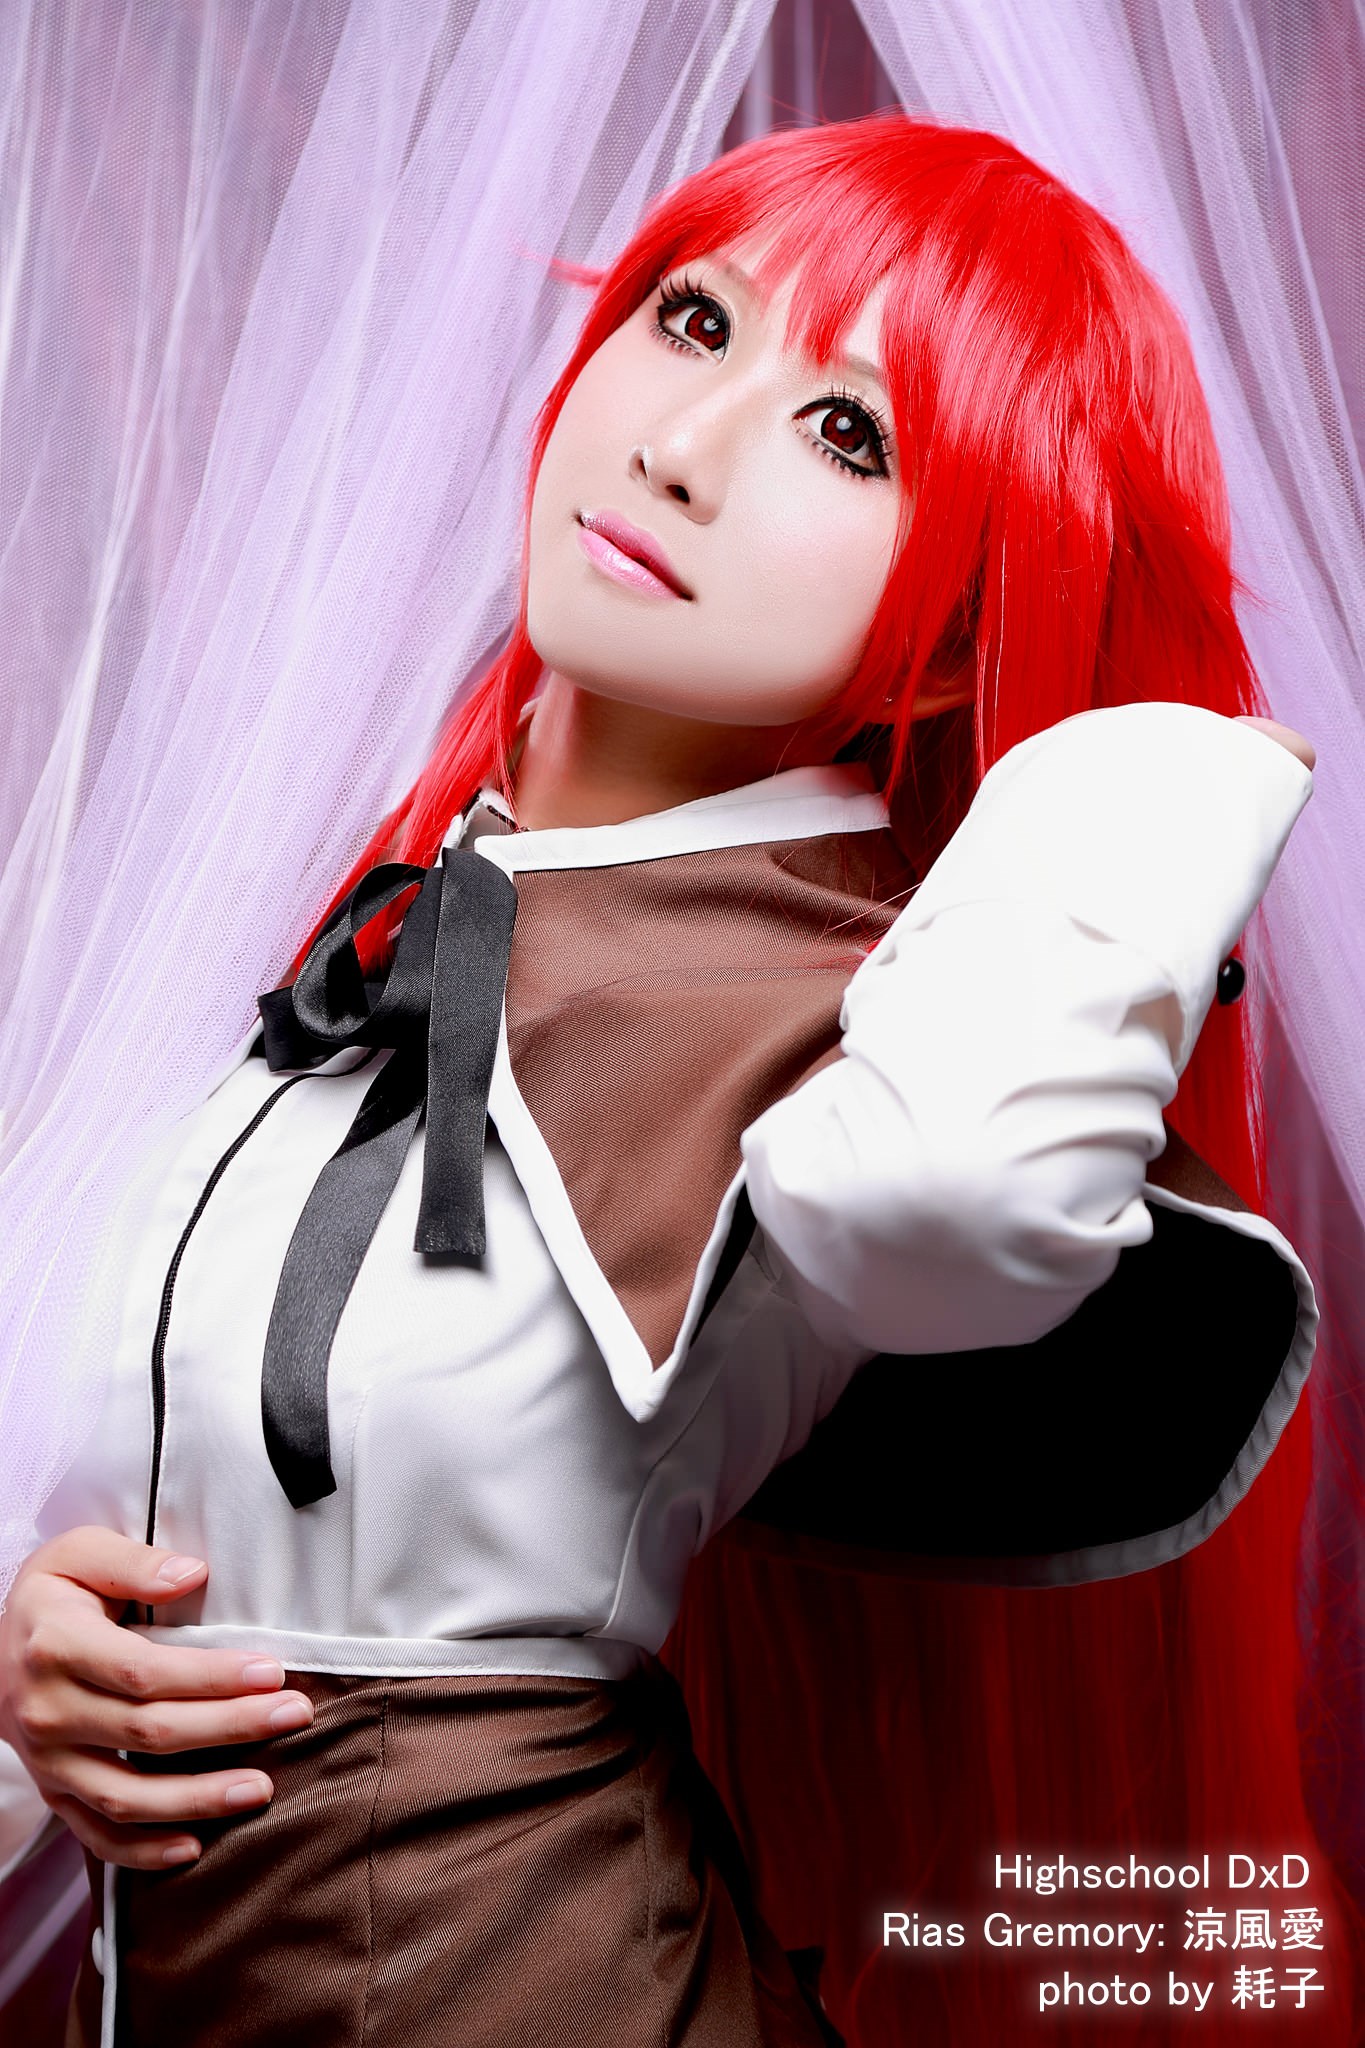 High school DXD series energetic red hair Xu Hong(3)